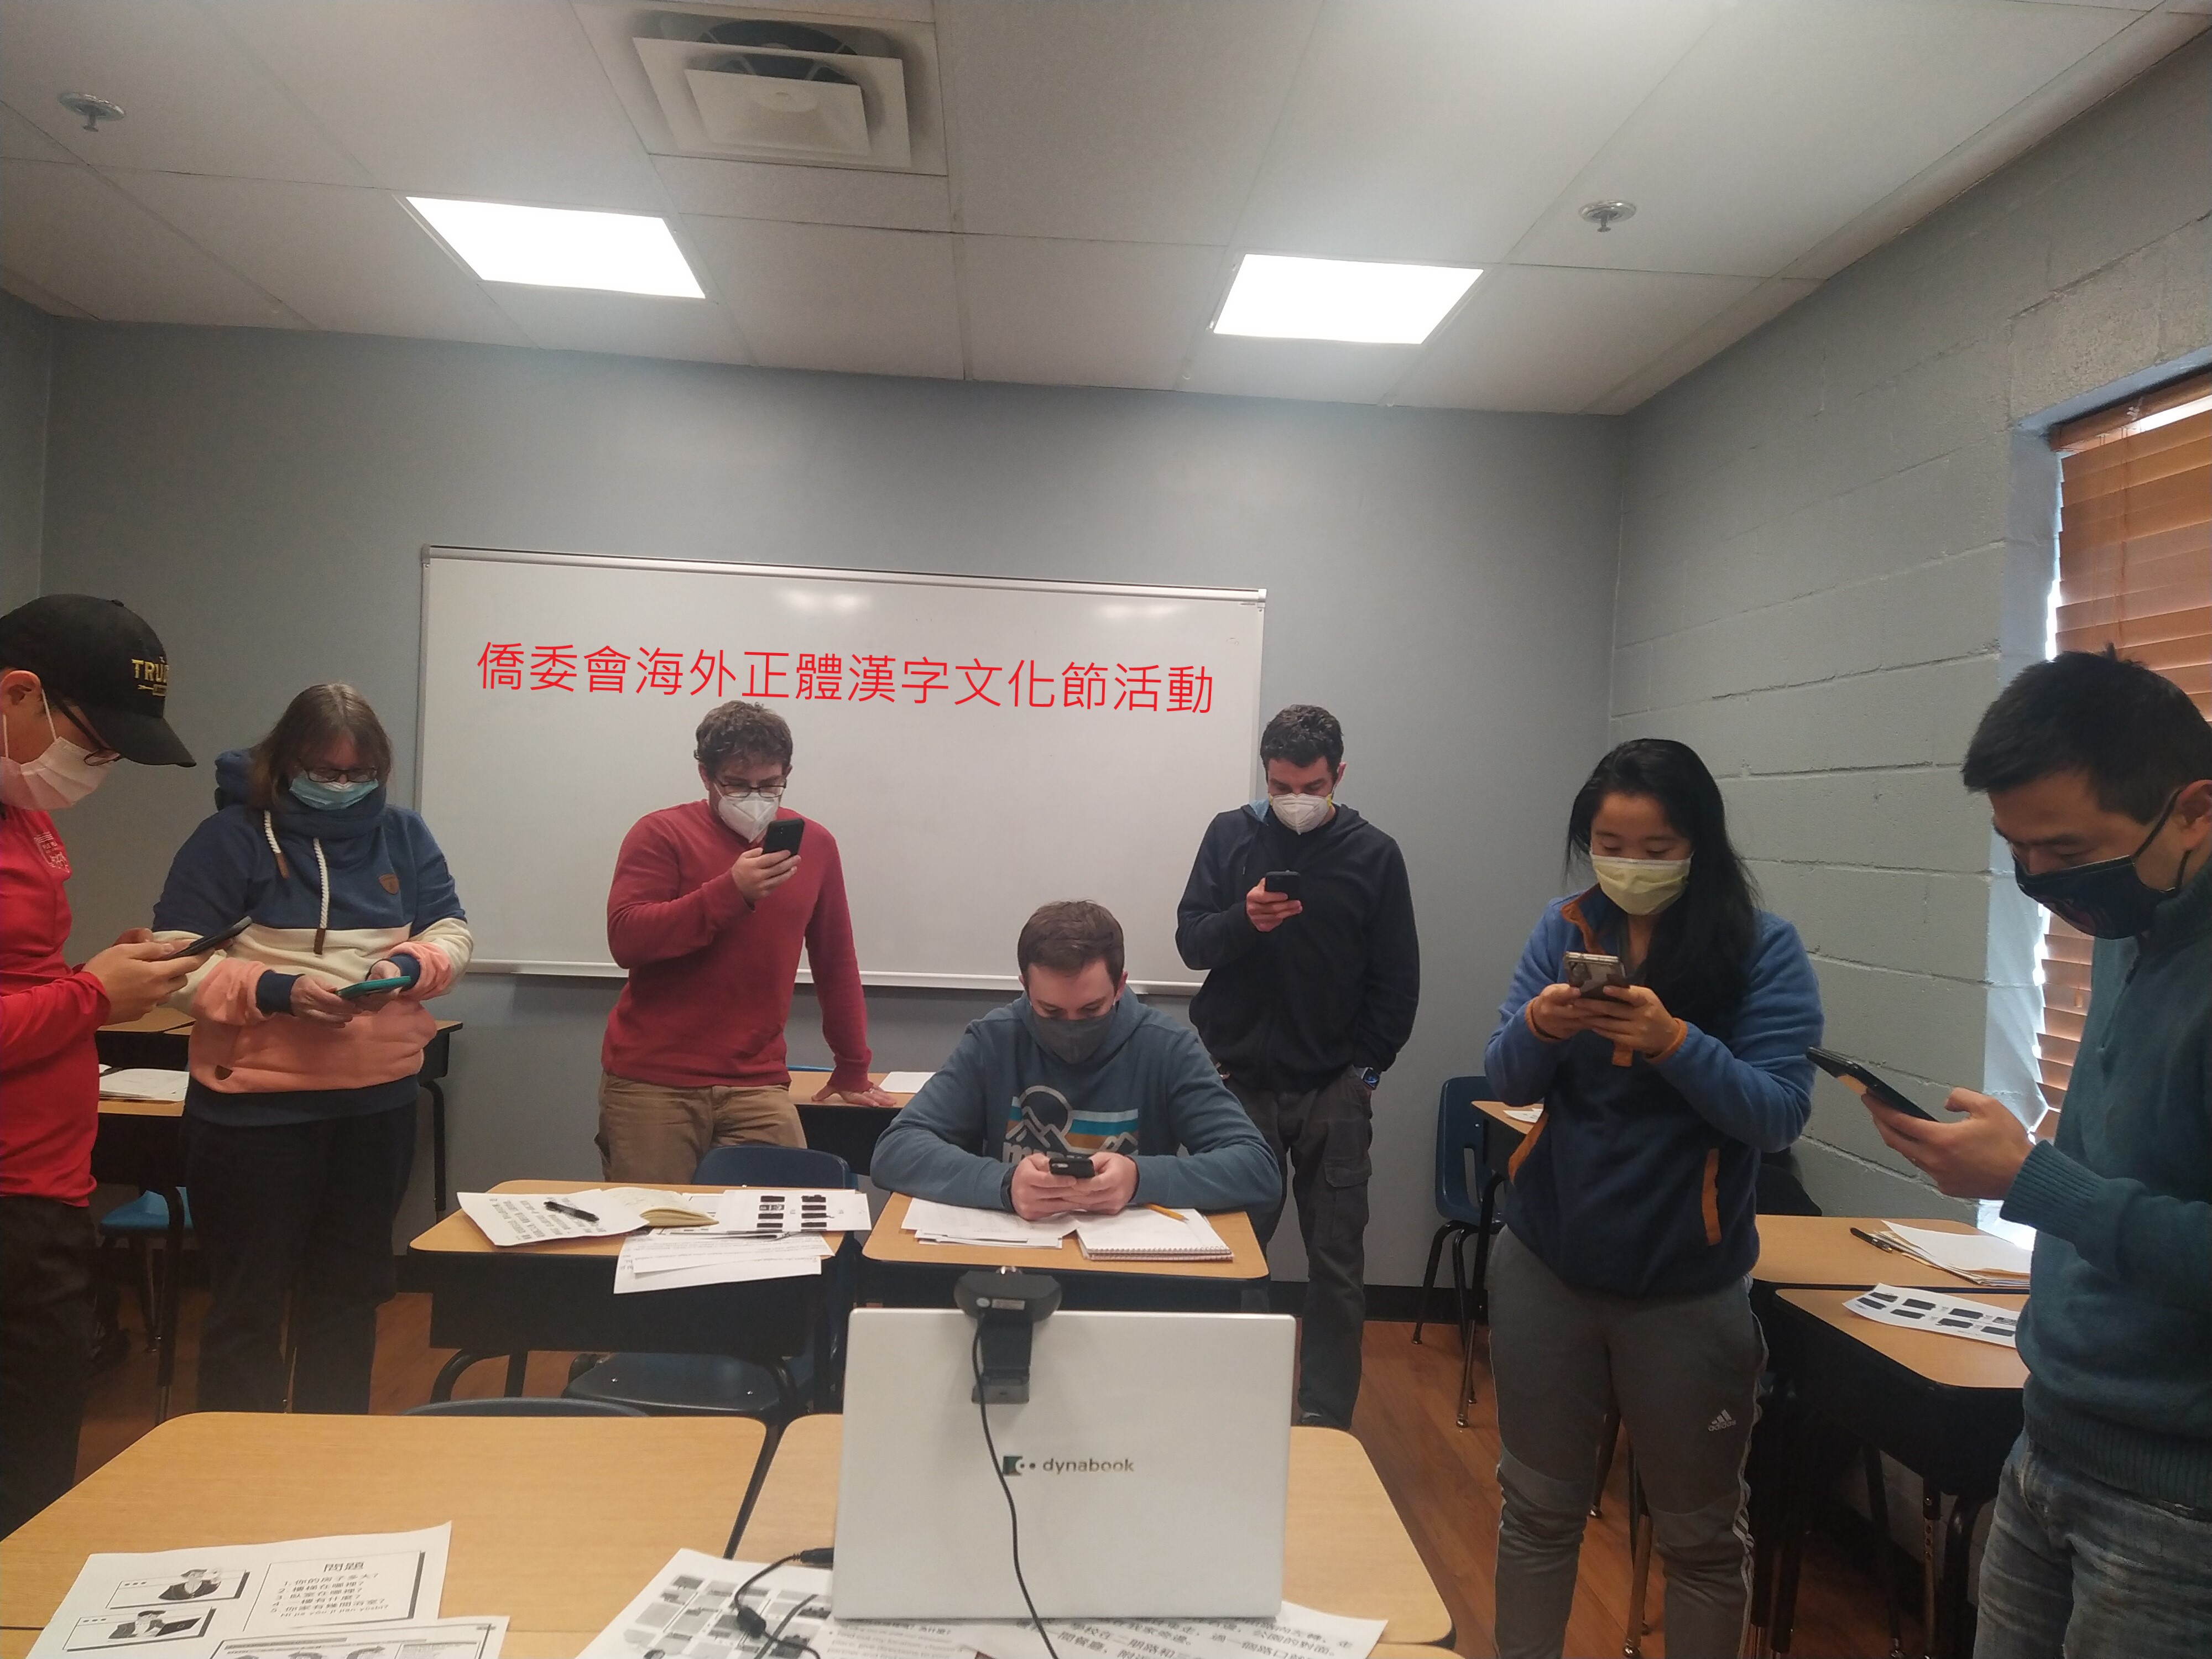 亞特蘭大臺灣華語文學習中心主流人士共同參與識字比賽